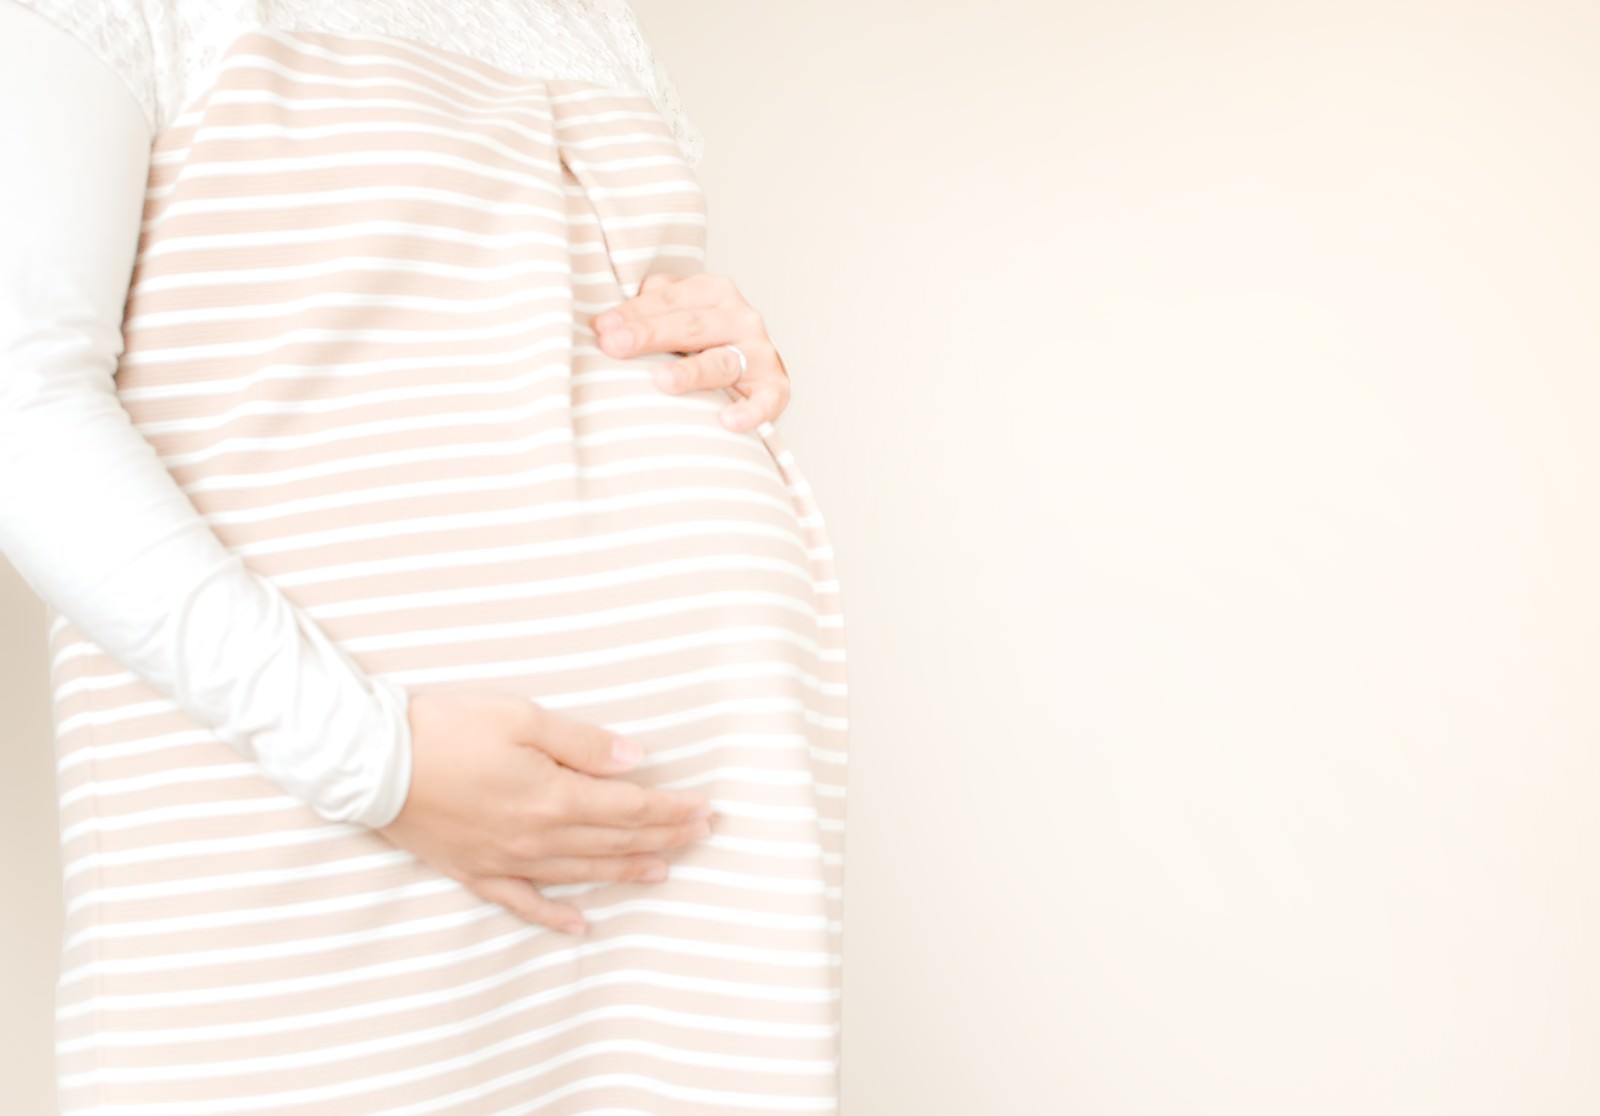 「お腹の胎動を感じる母親お腹の胎動を感じる母親」のフリー写真素材を拡大